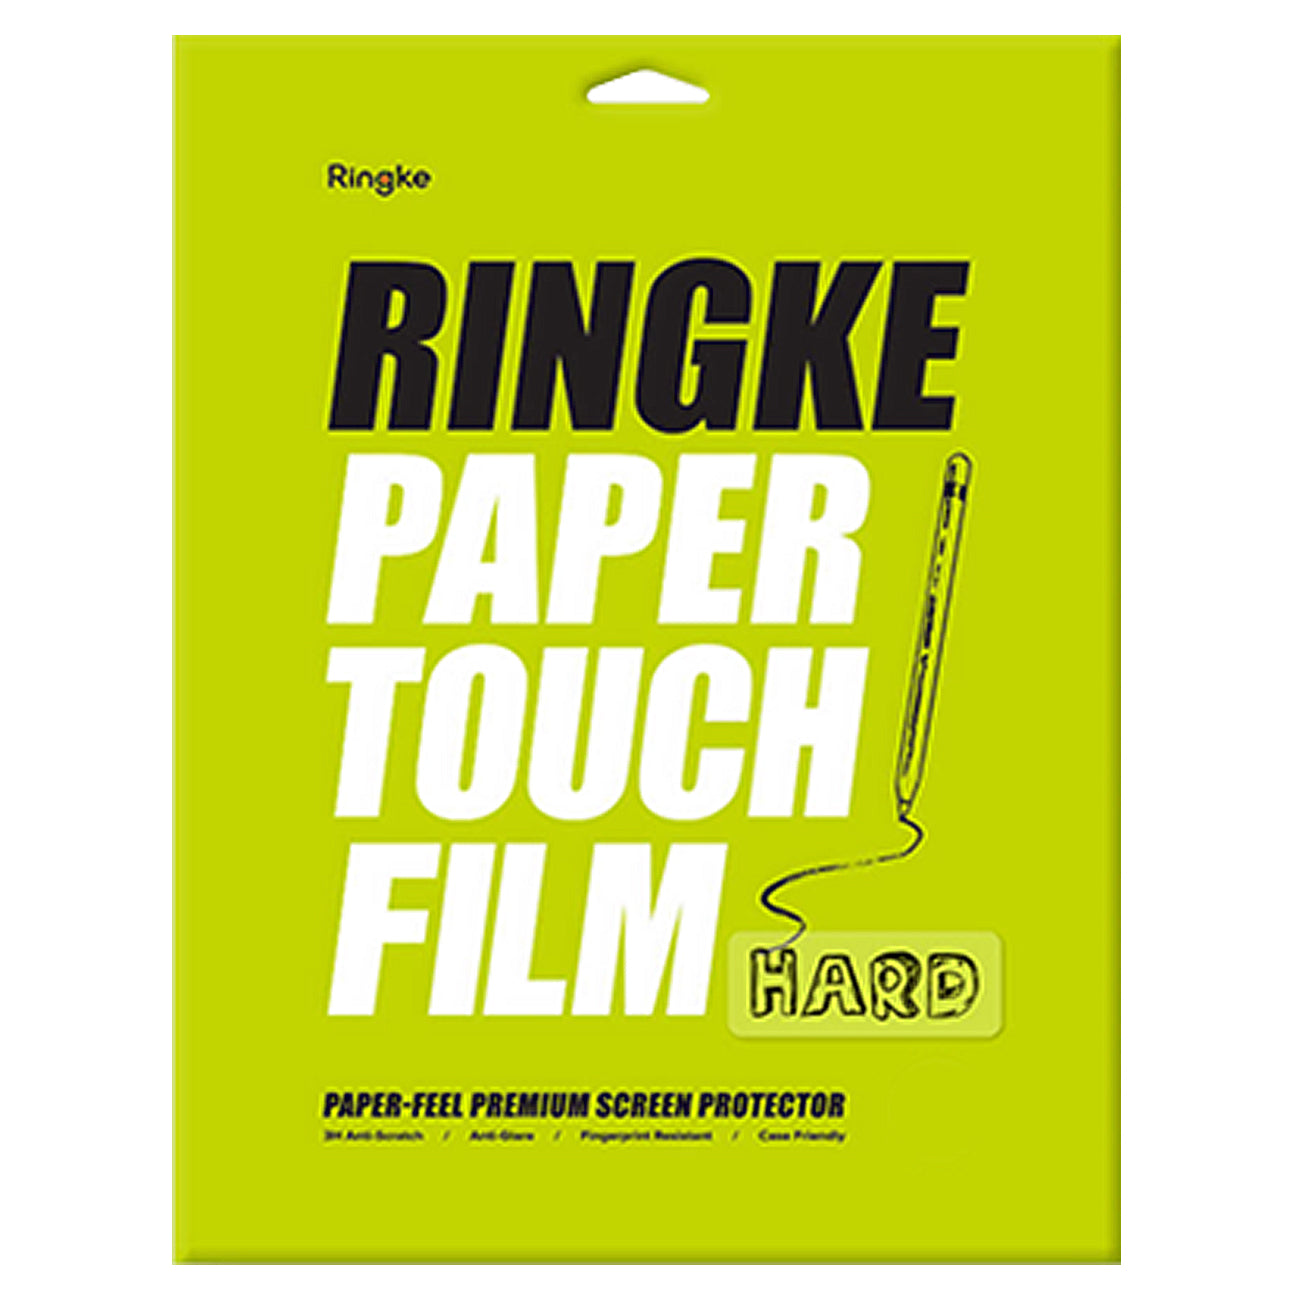 Ringke PAPER TOUGH FILM SCREEN PROTECTOR